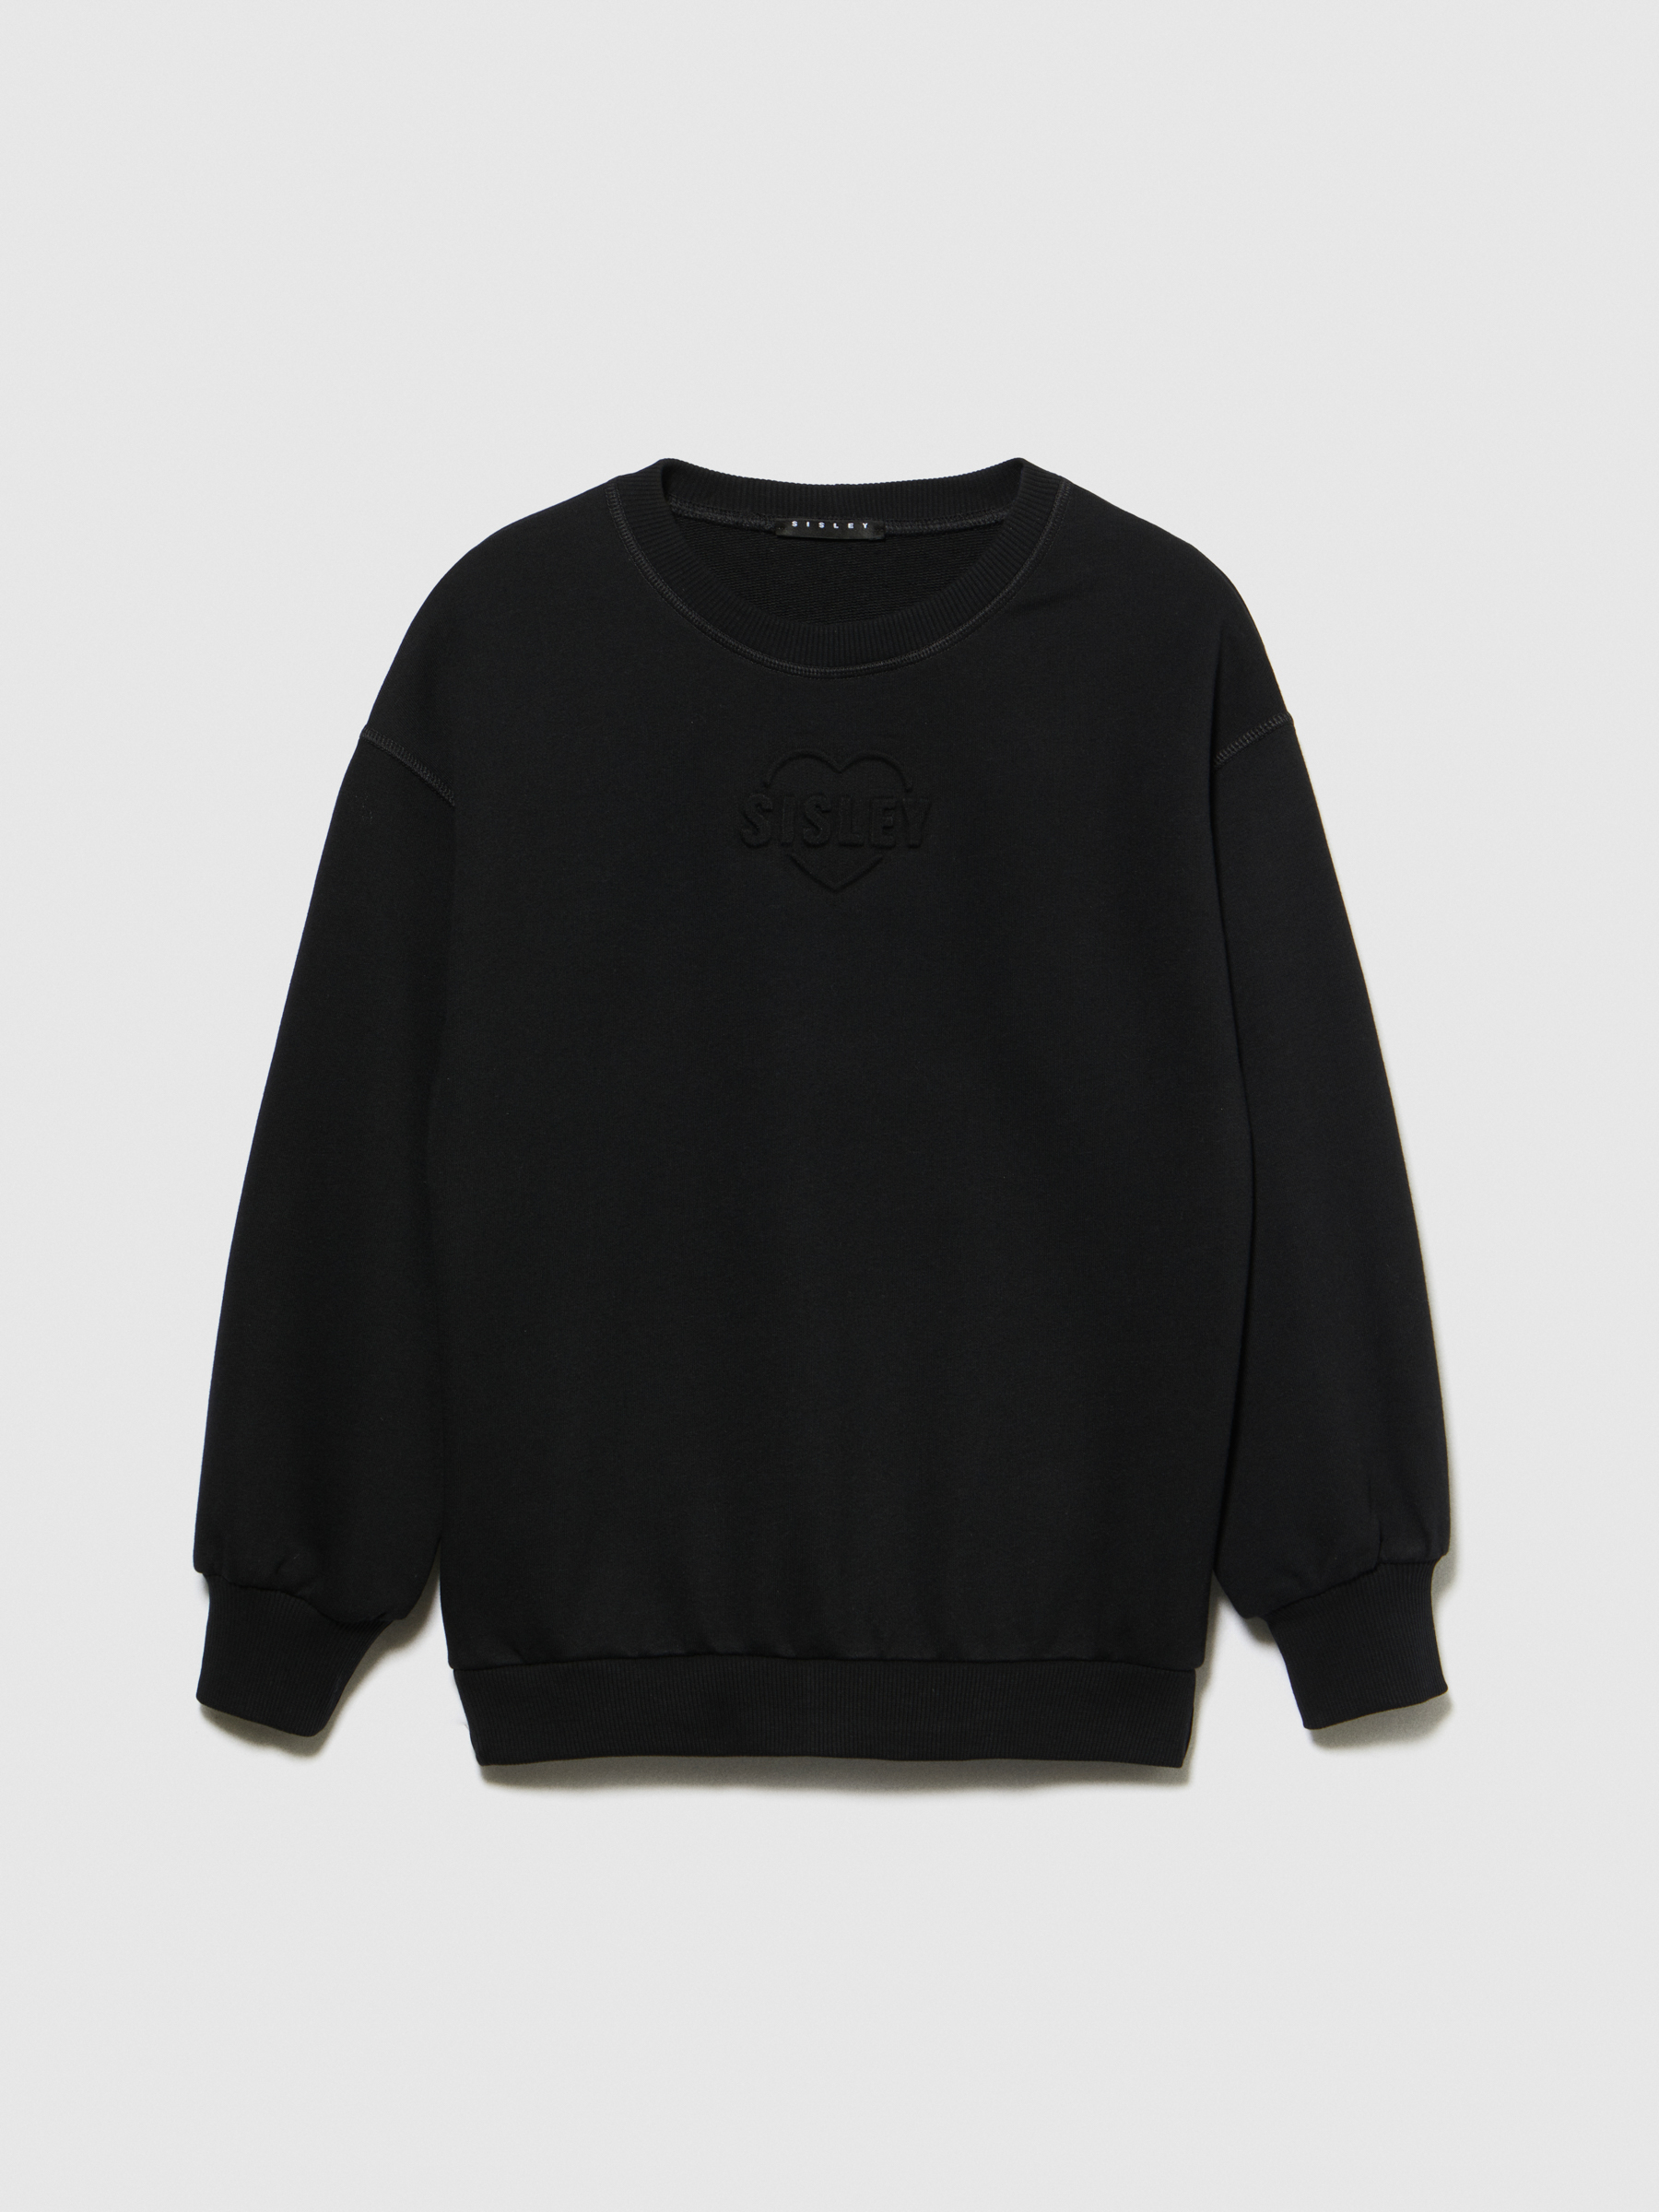 Sisley Young - Sweatshirt With Embossed Print, Woman, Black, Size: XL